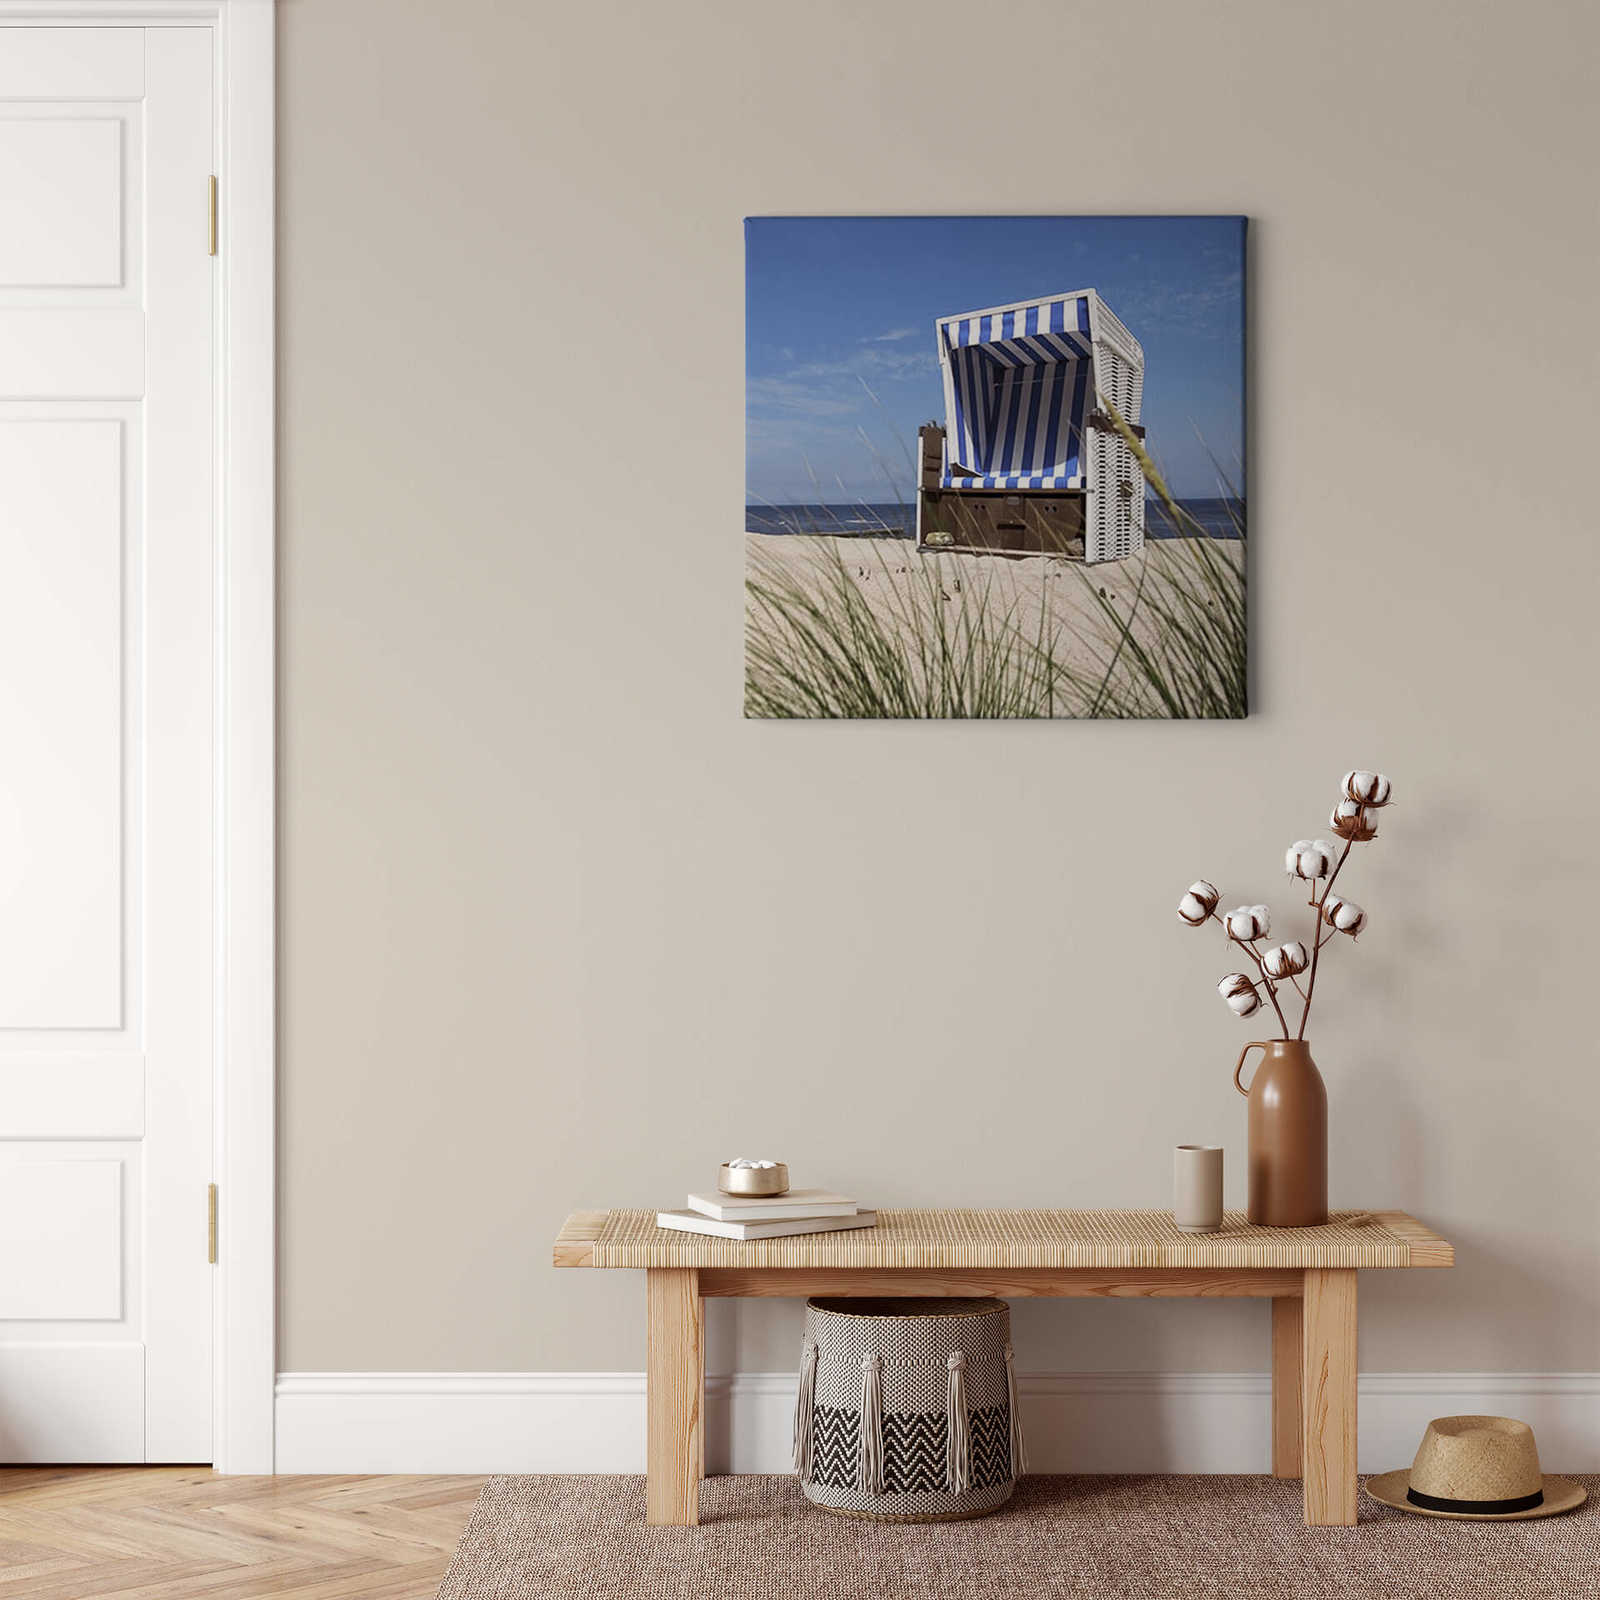             Vierkant canvas schilderij strandstoel - 0,50 m x 0,50 m
        